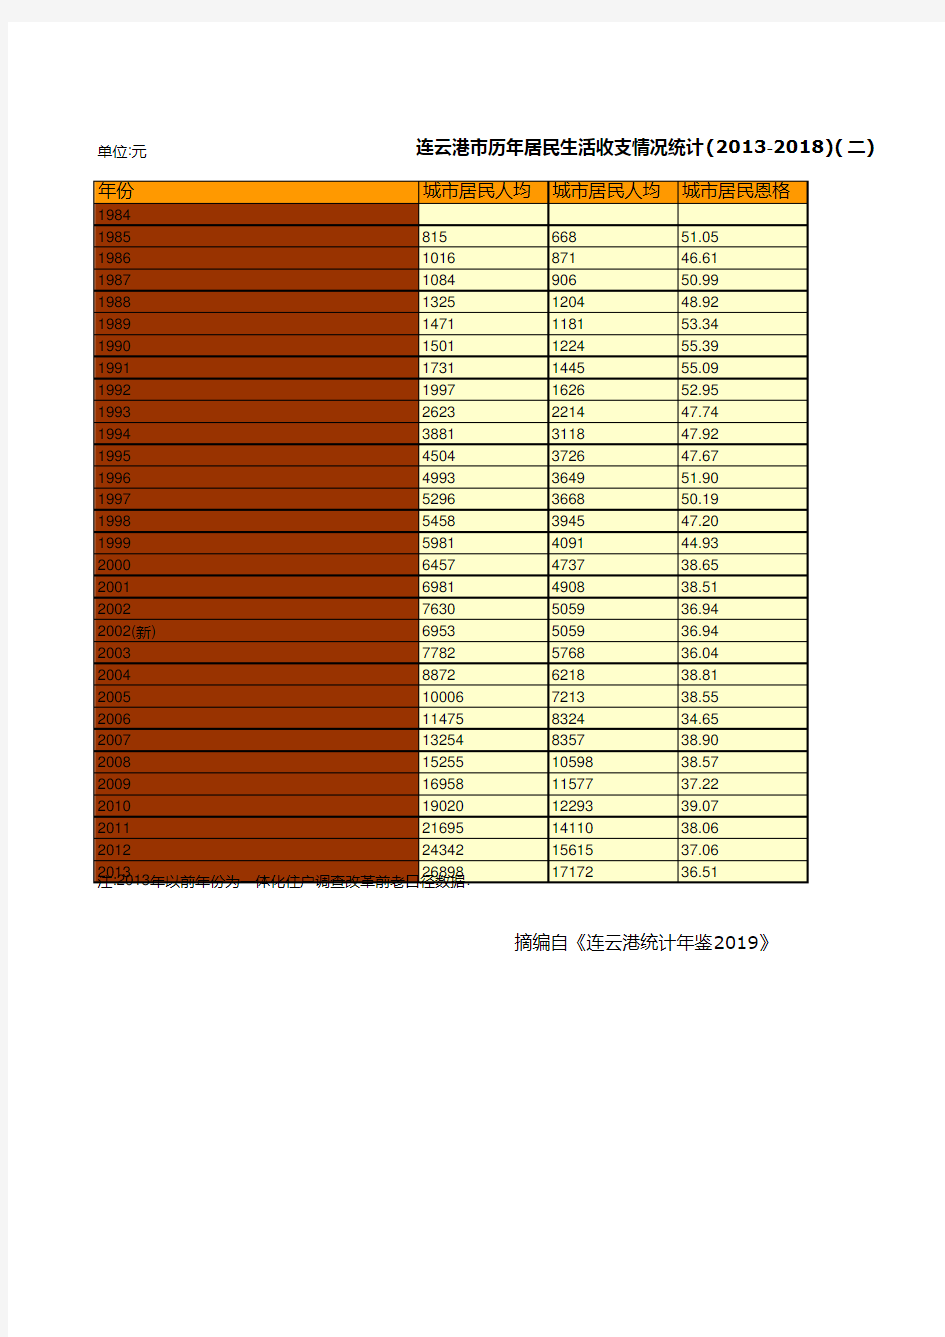 连云港市统计年鉴社会经济发展指标数据：历年居民生活收支情况统计(2013-2018)(二)